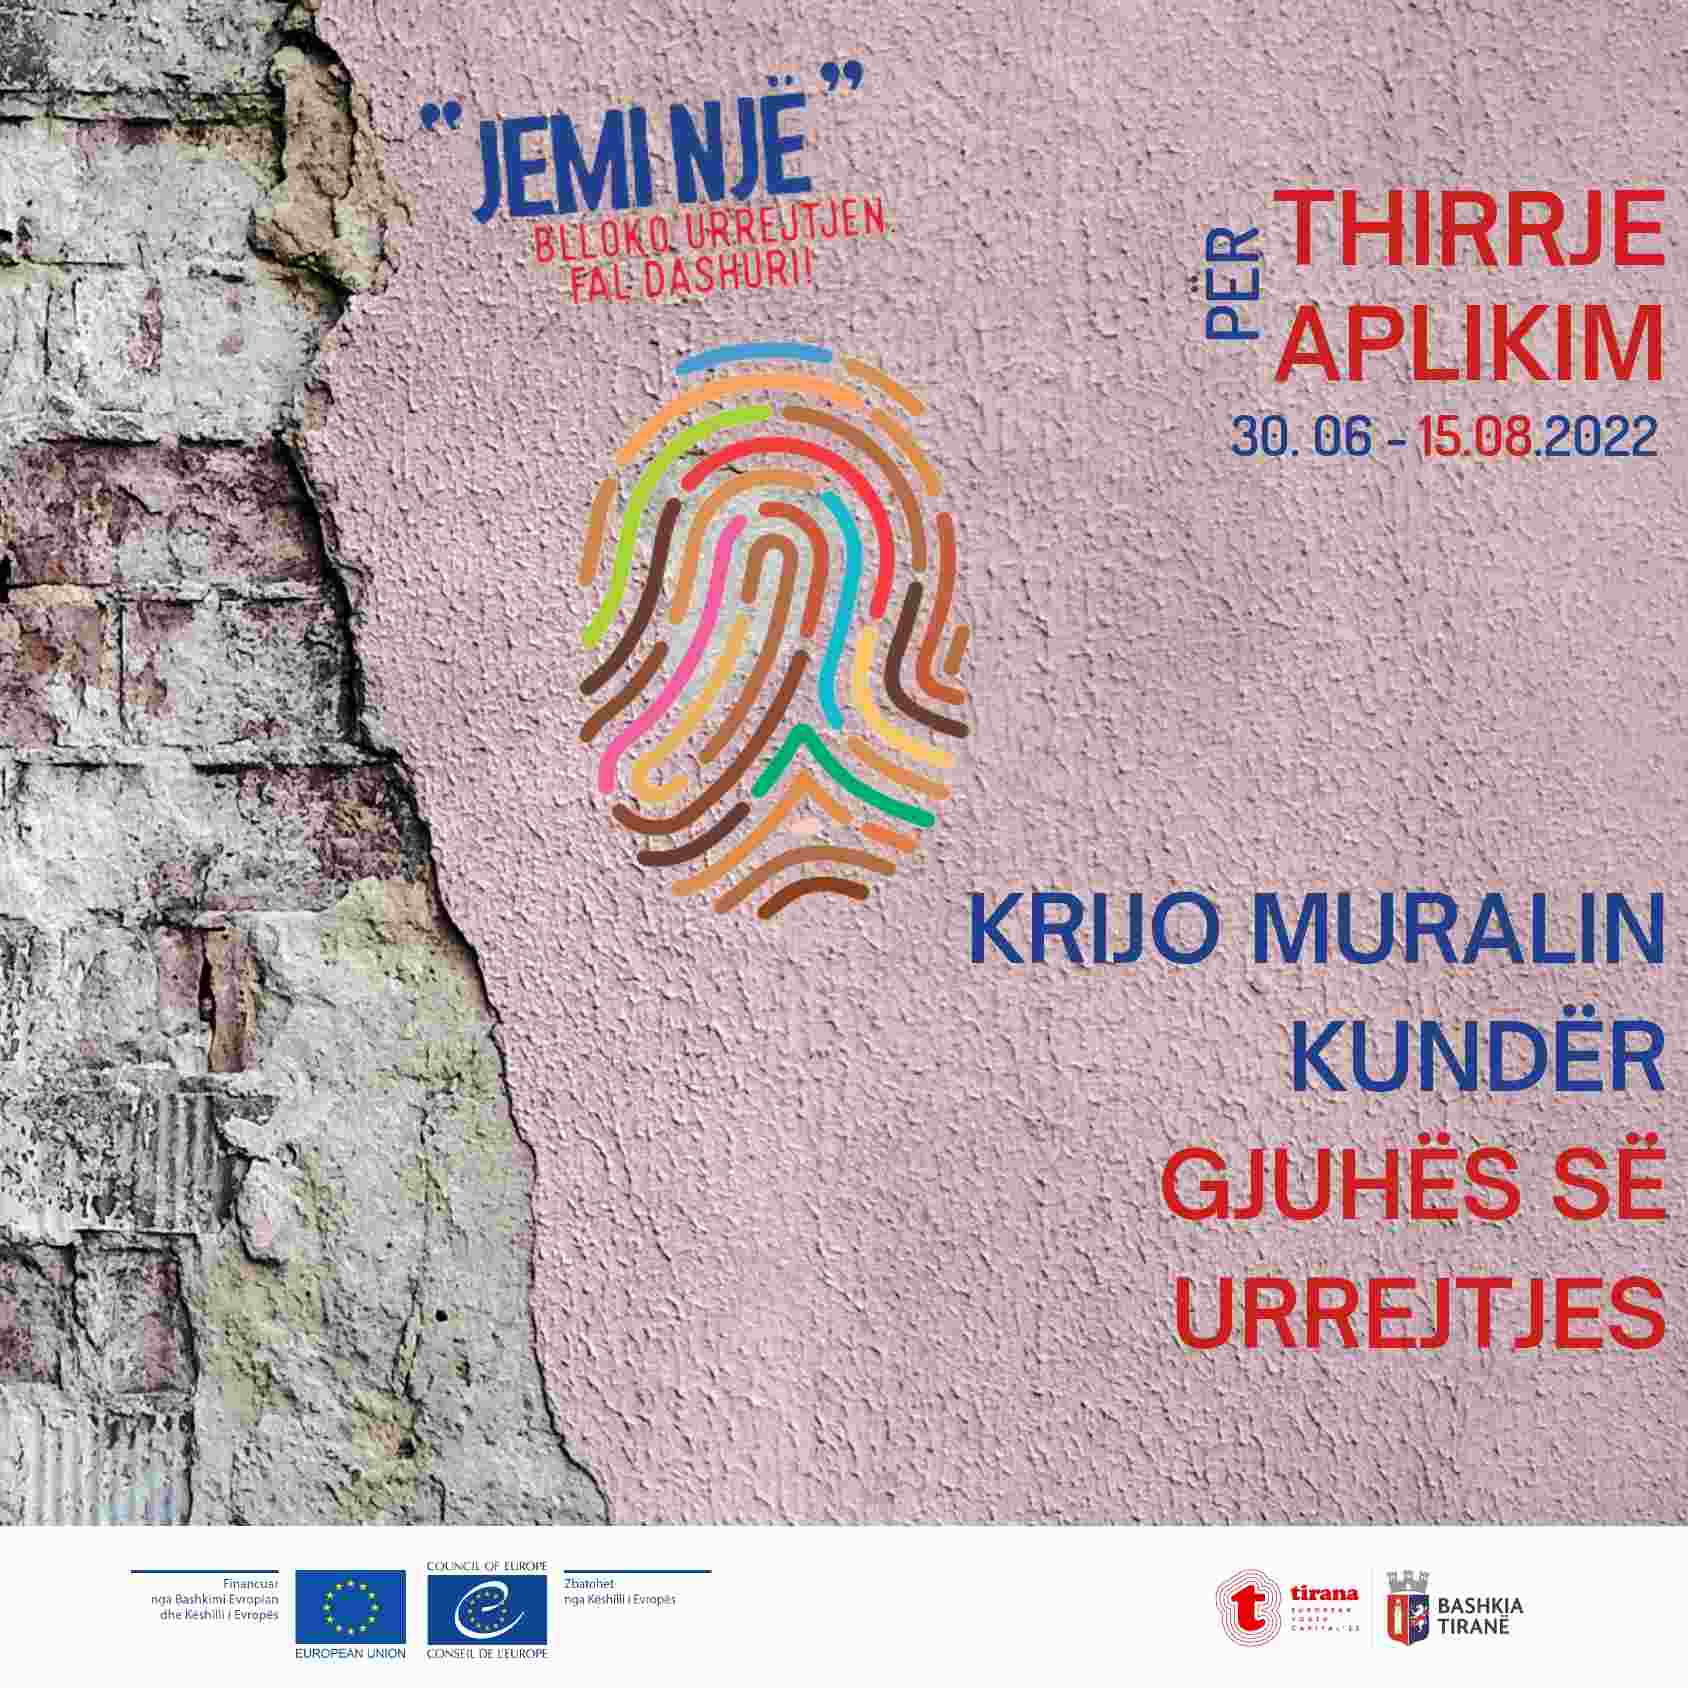 Thirrje e hapur për artistët e rinj vizual që duan të bëhen pjesë e fushatës “Blloko Urrejtjen. Fal Dashuri” në Shqipëri